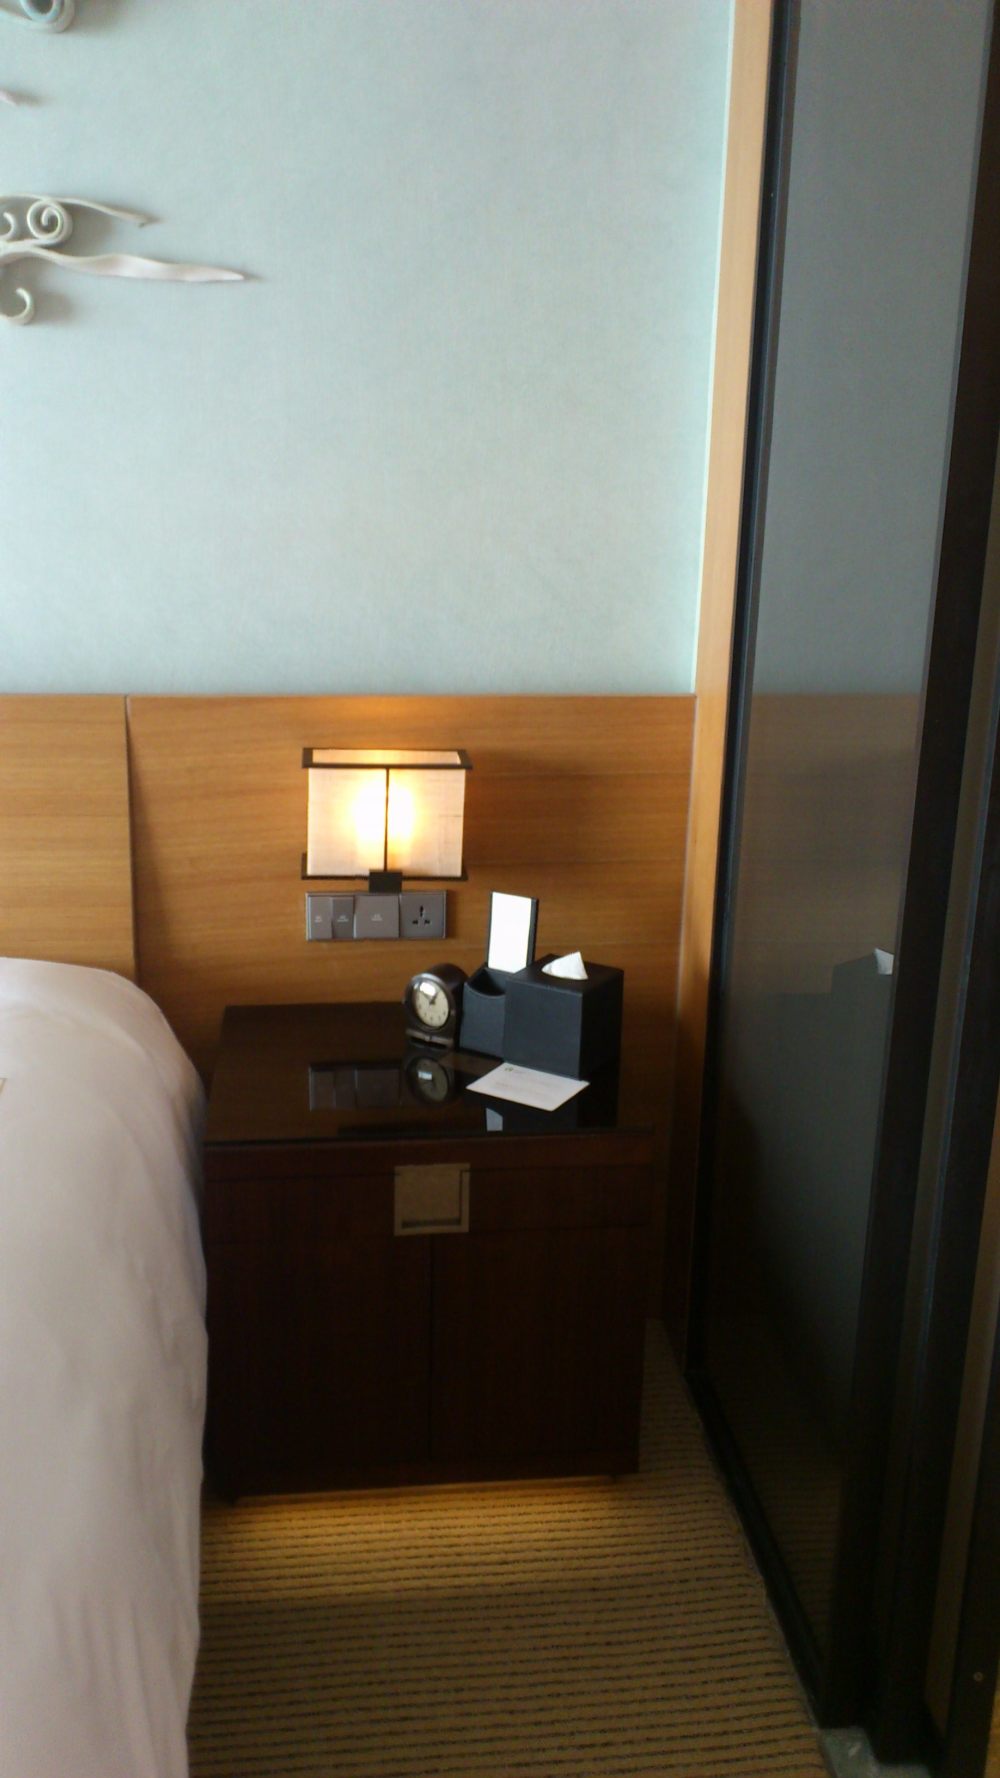 苏州晋合洲际Intercontinental酒店--2012.06.24第八页更新客房_DSC_1282.JPG